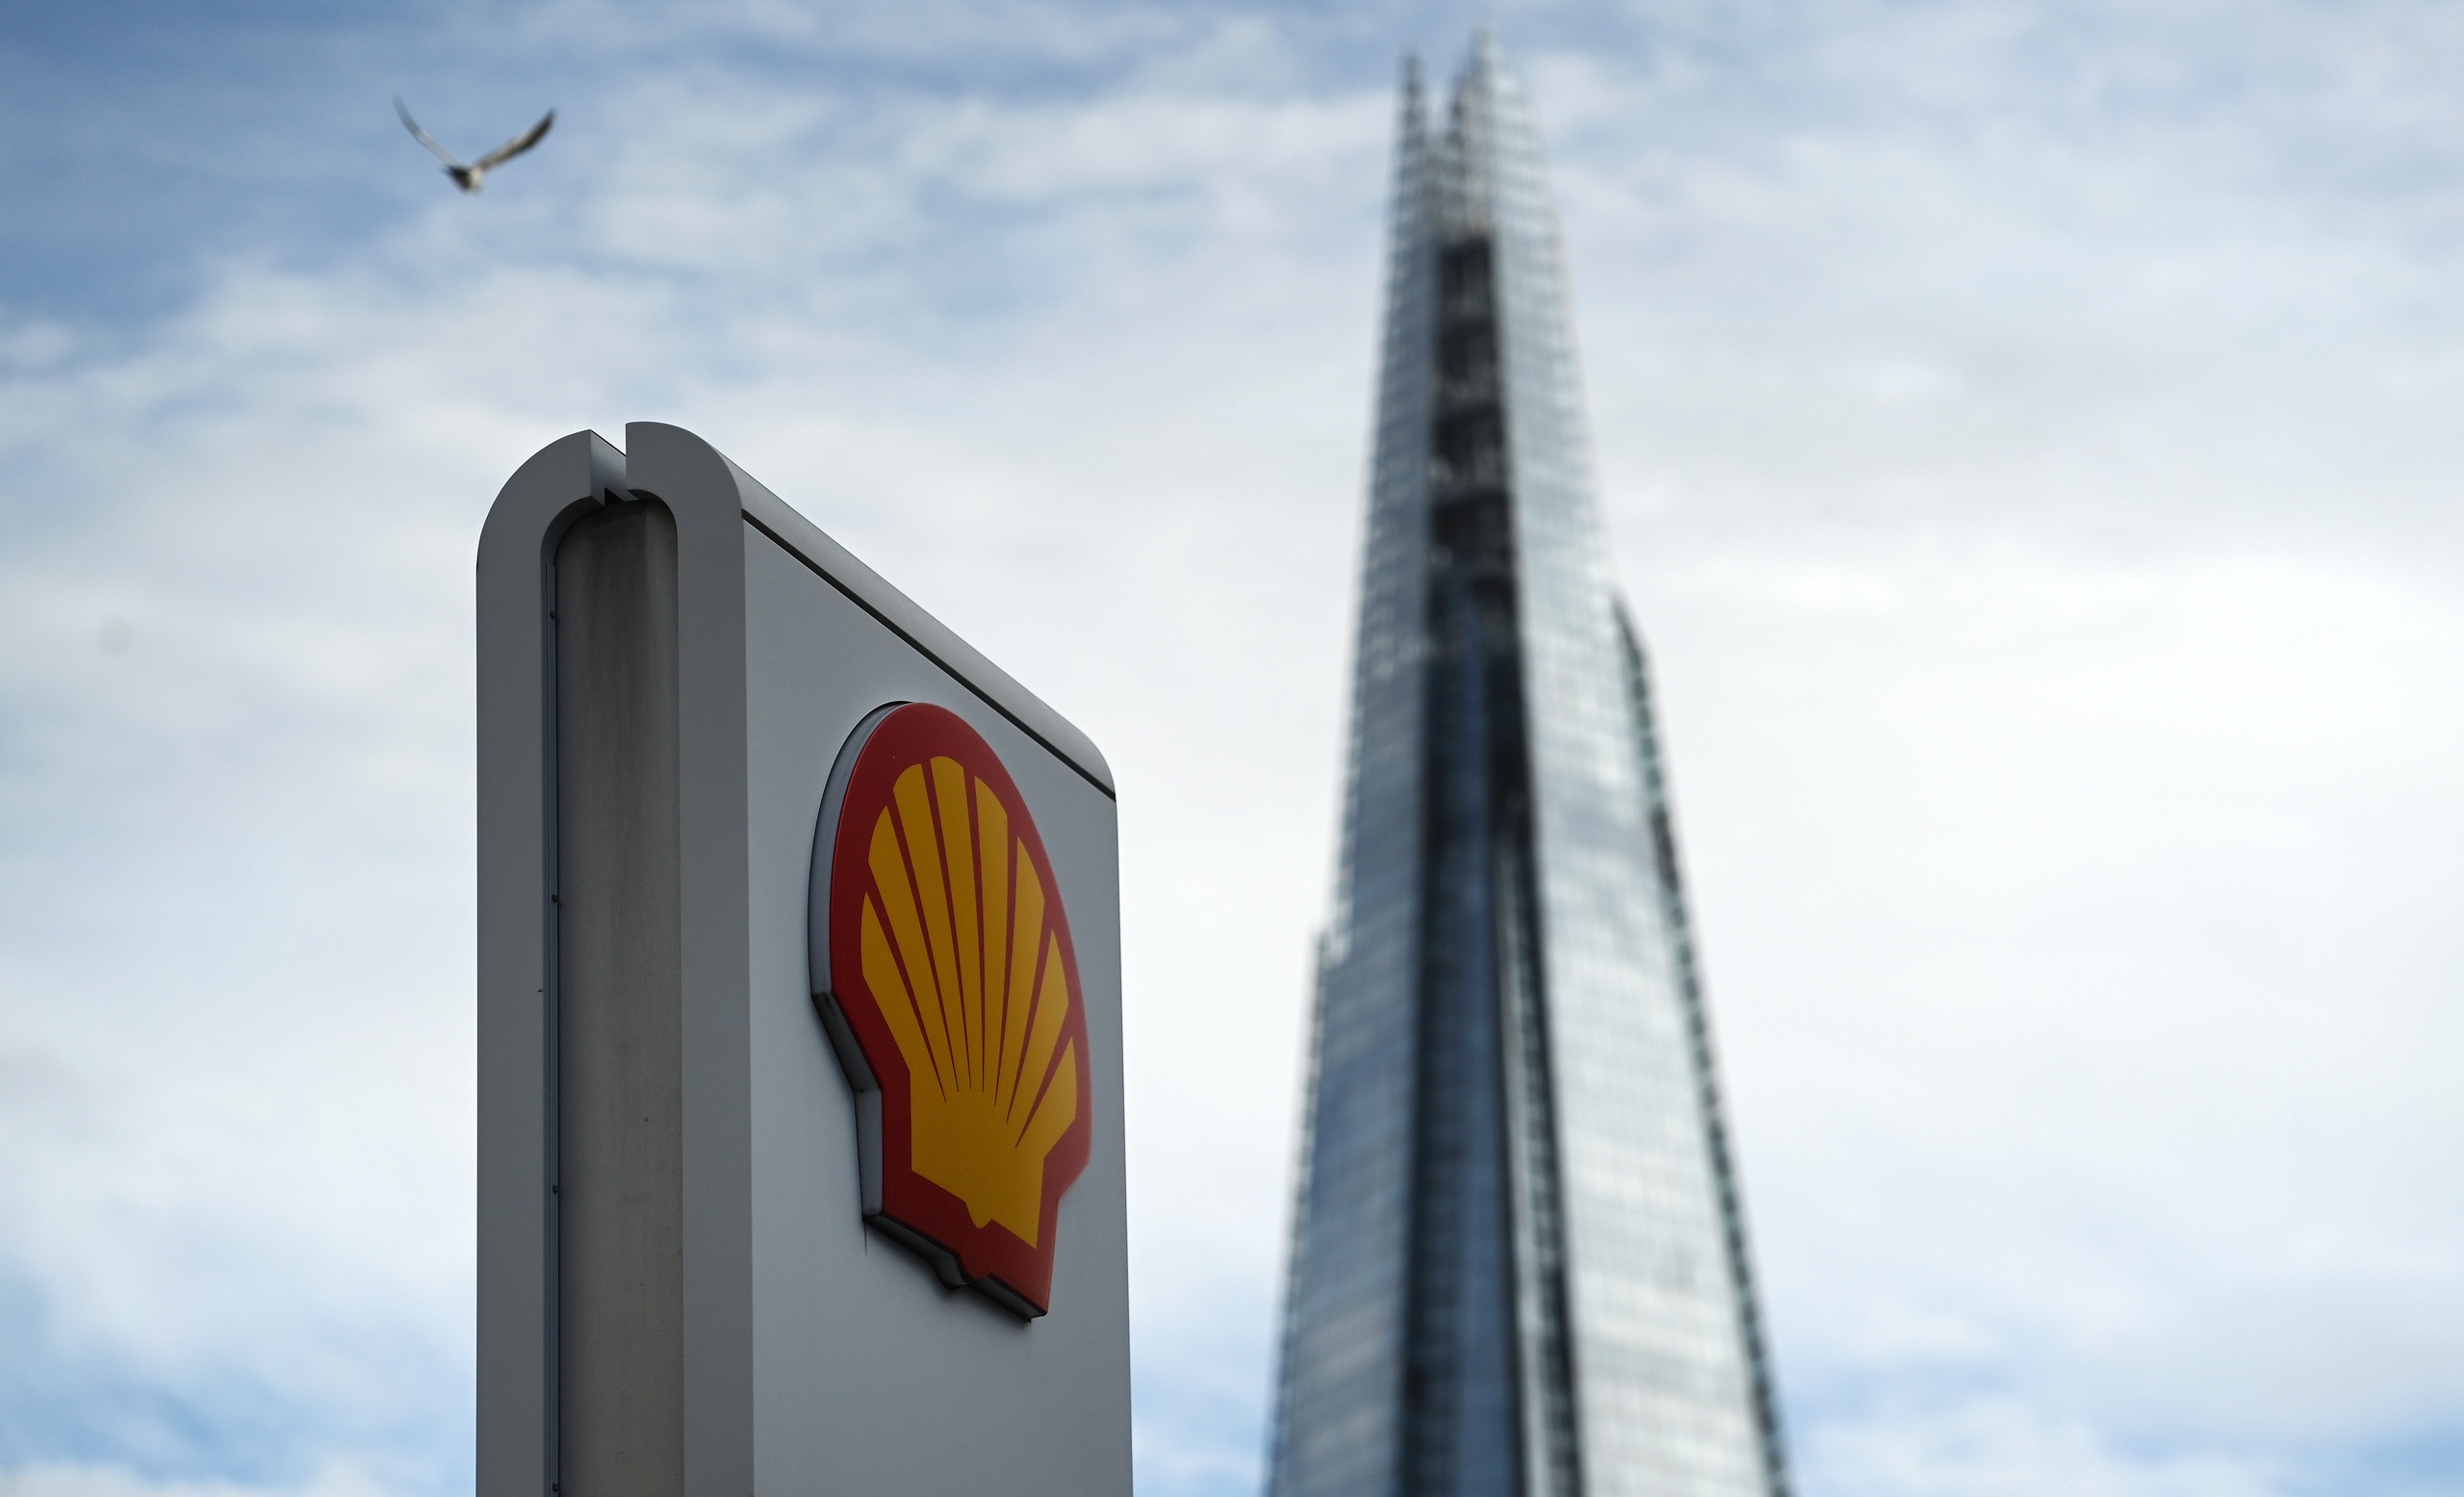 Olie- en gasbedrijven Shell en TotalEnergies hebben opnieuw enorme winsten geboekt tijdens de gascrisis. 